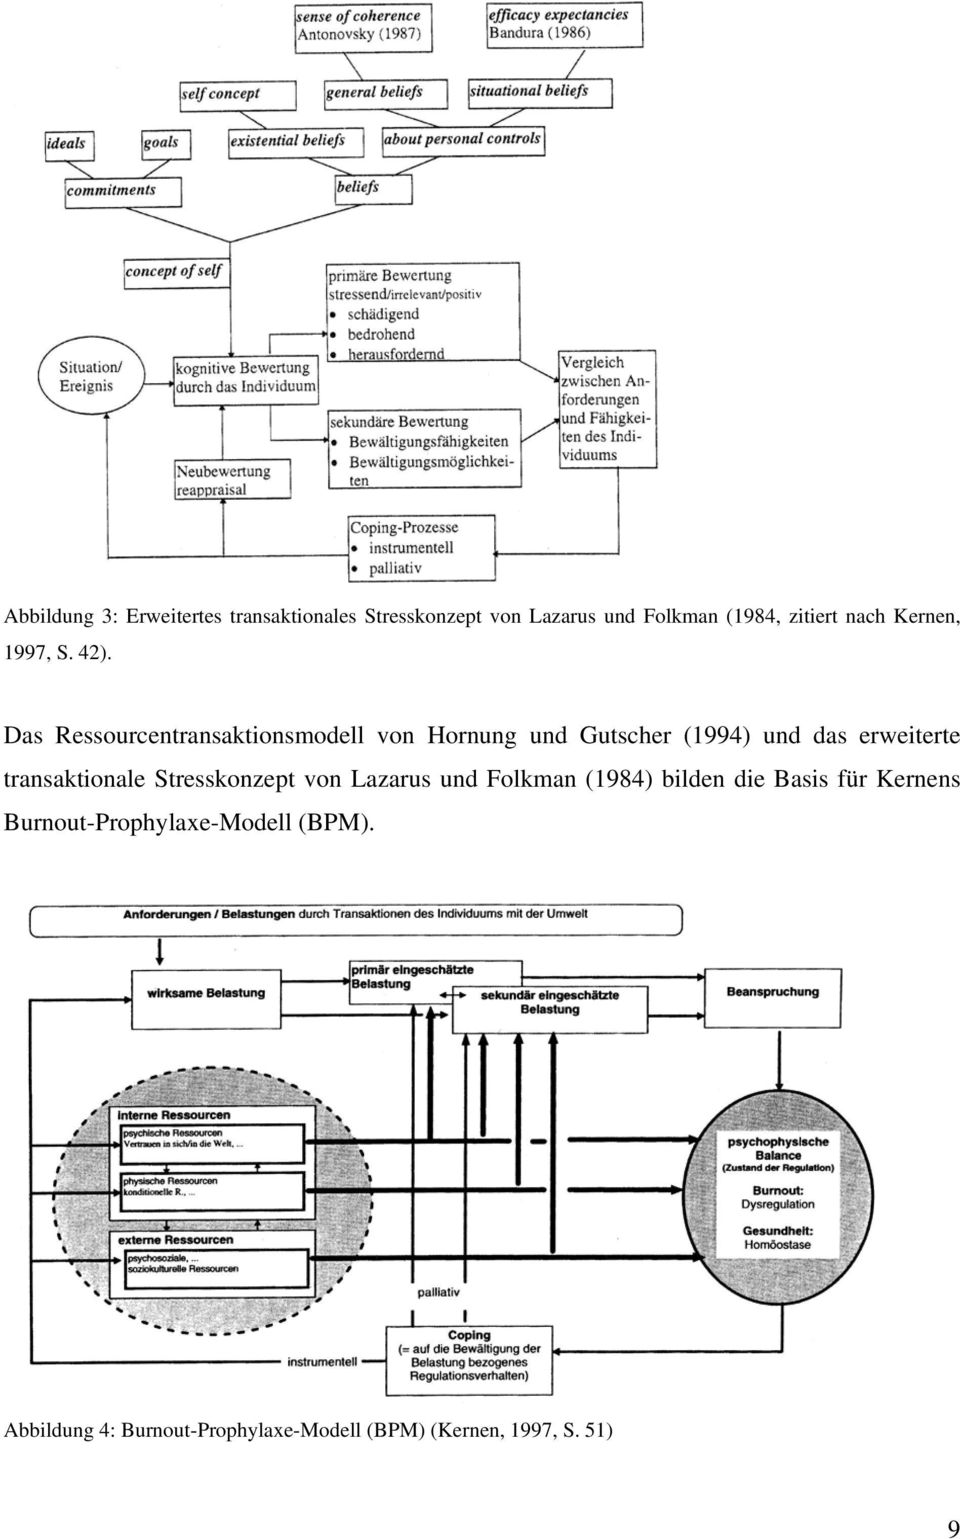 Das Ressourcentransaktionsmodell von Hornung und Gutscher (1994) und das erweiterte transaktionale